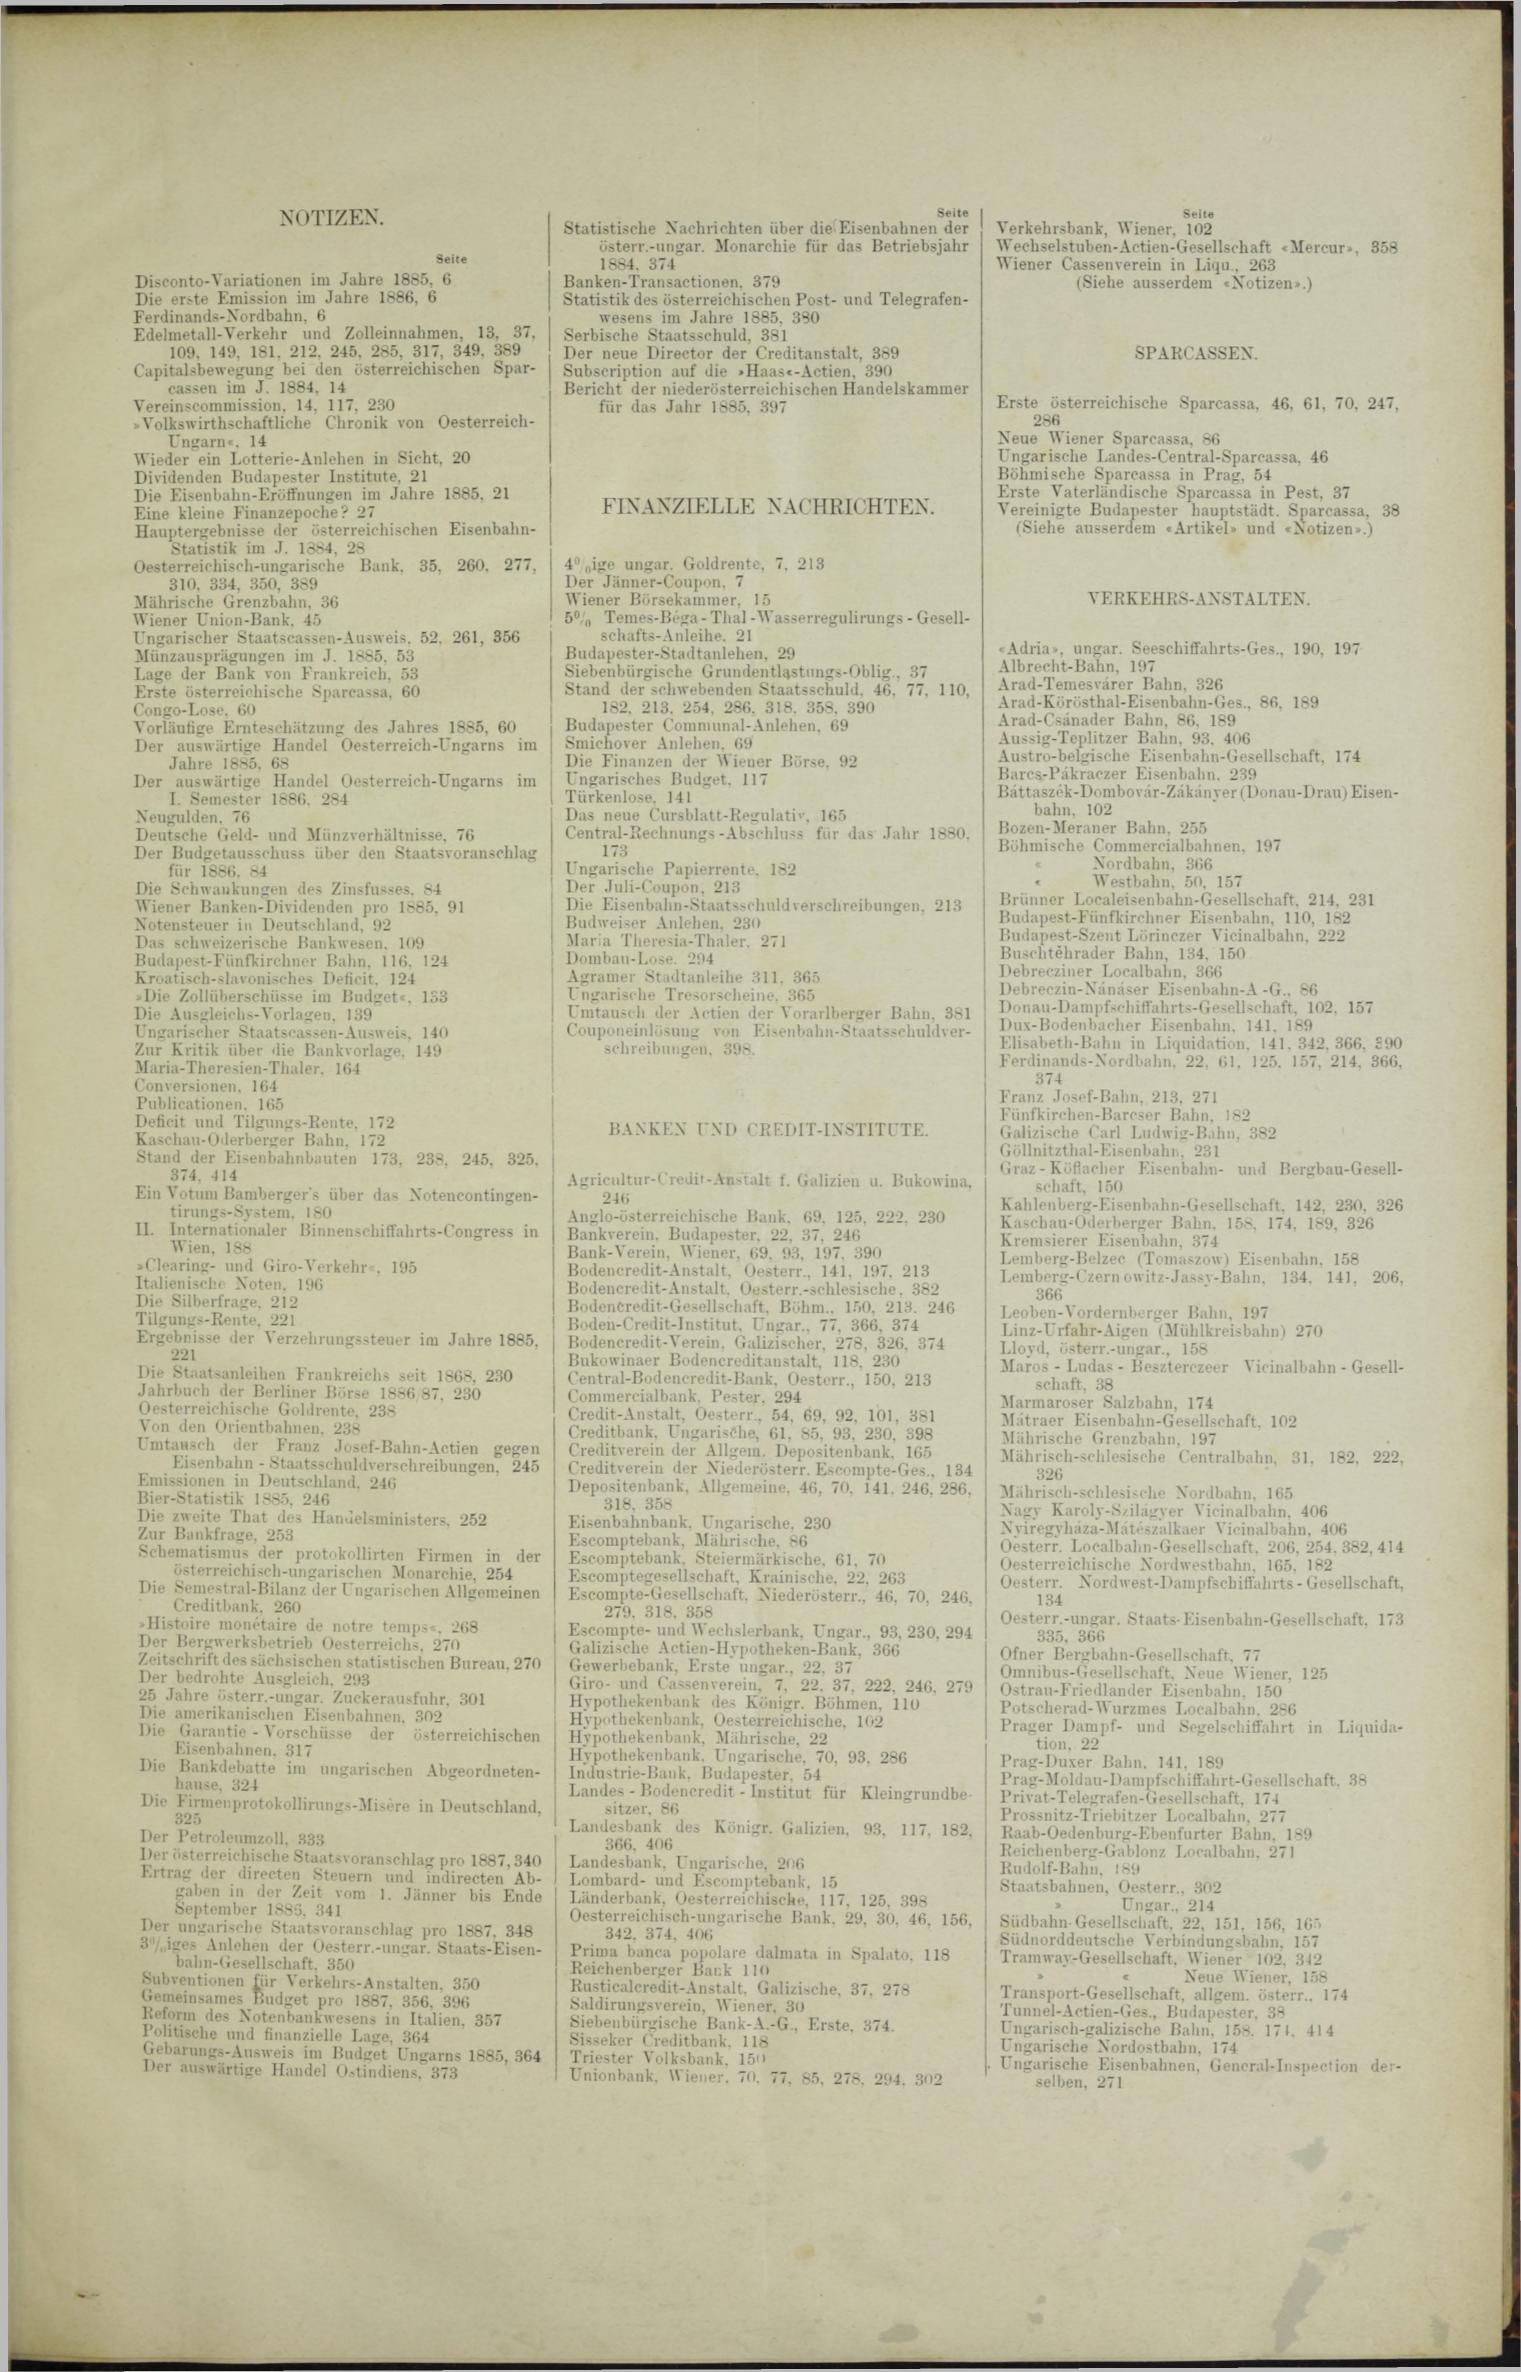 Der Tresor 26.08.1886 - Seite 11